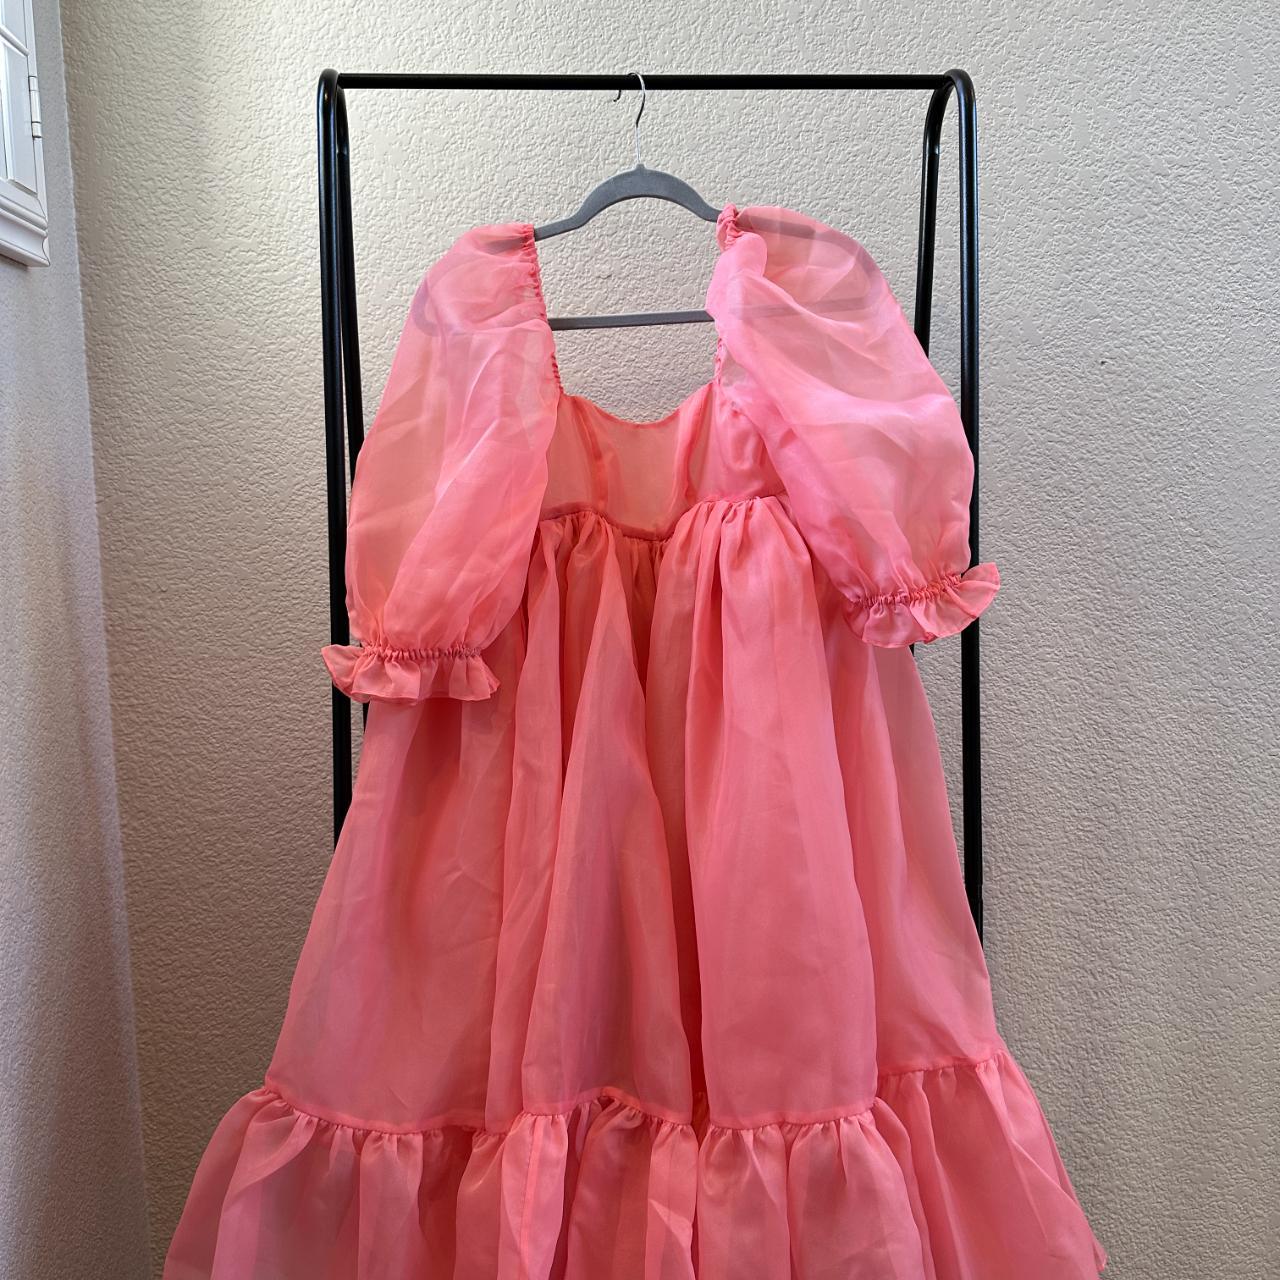 Selkie Women's Pink Dress | Depop